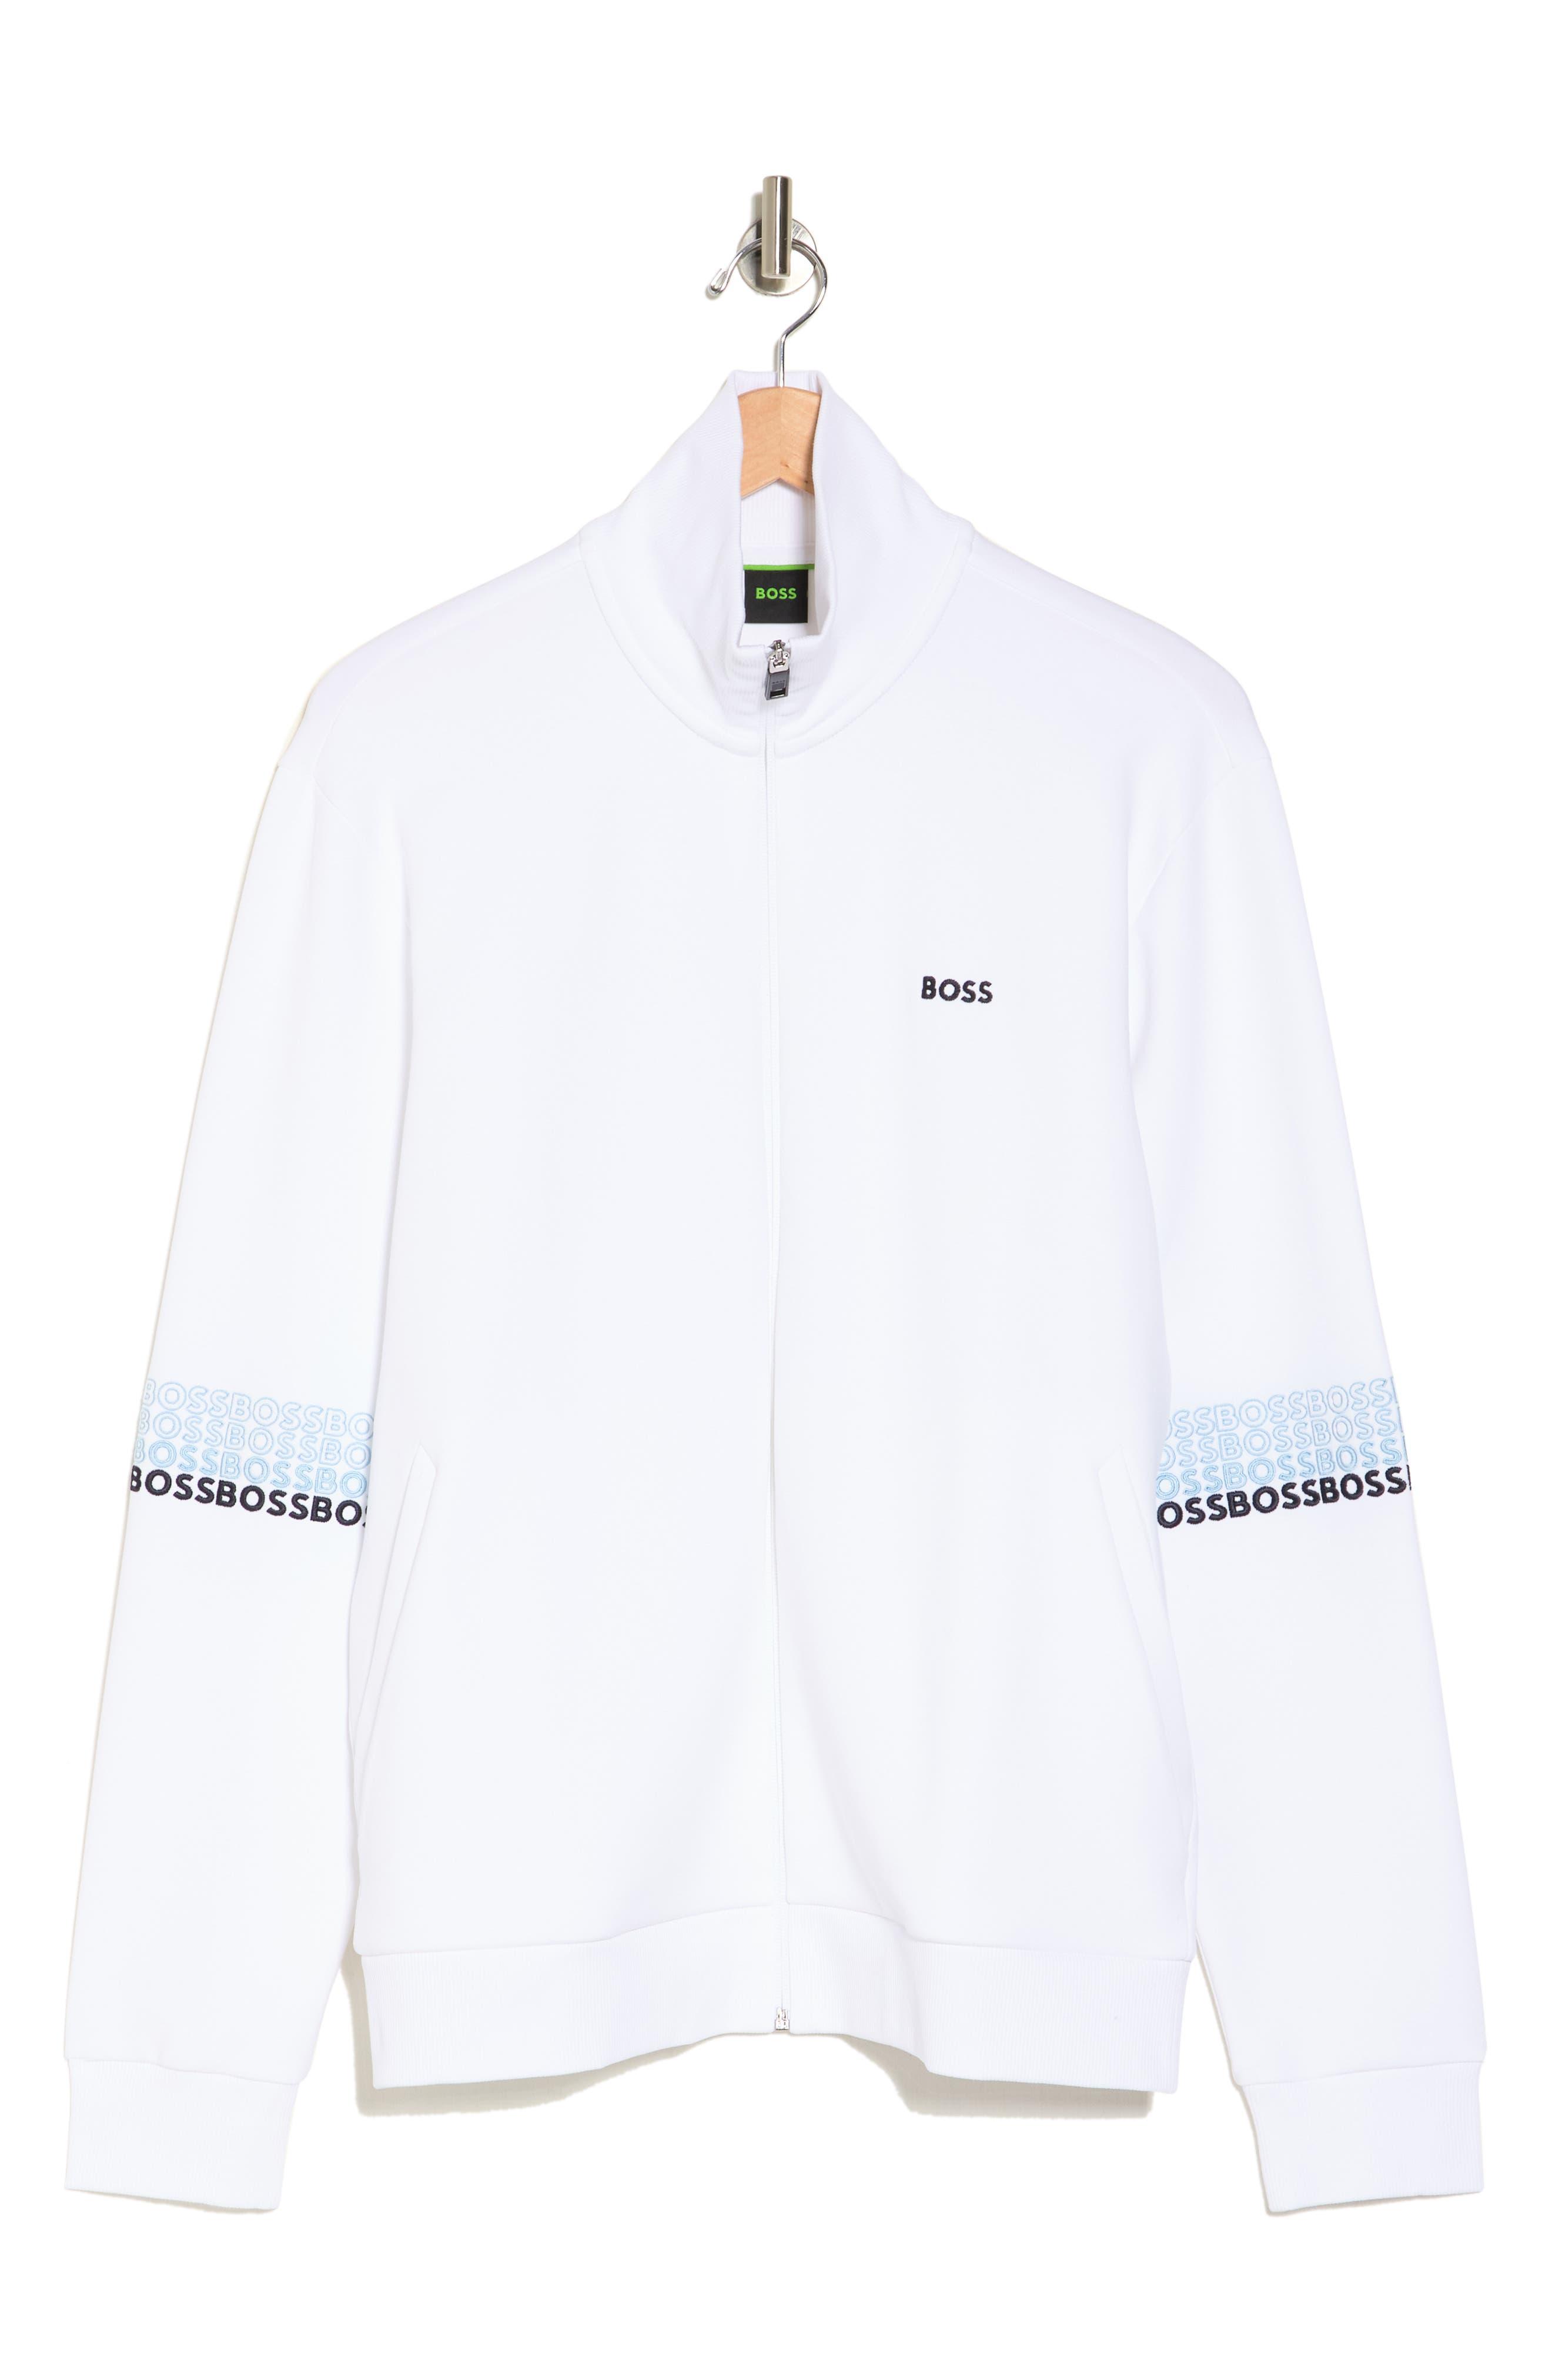 BOSS by HUGO BOSS Skaz Zip Jacket in White for Men | Lyst